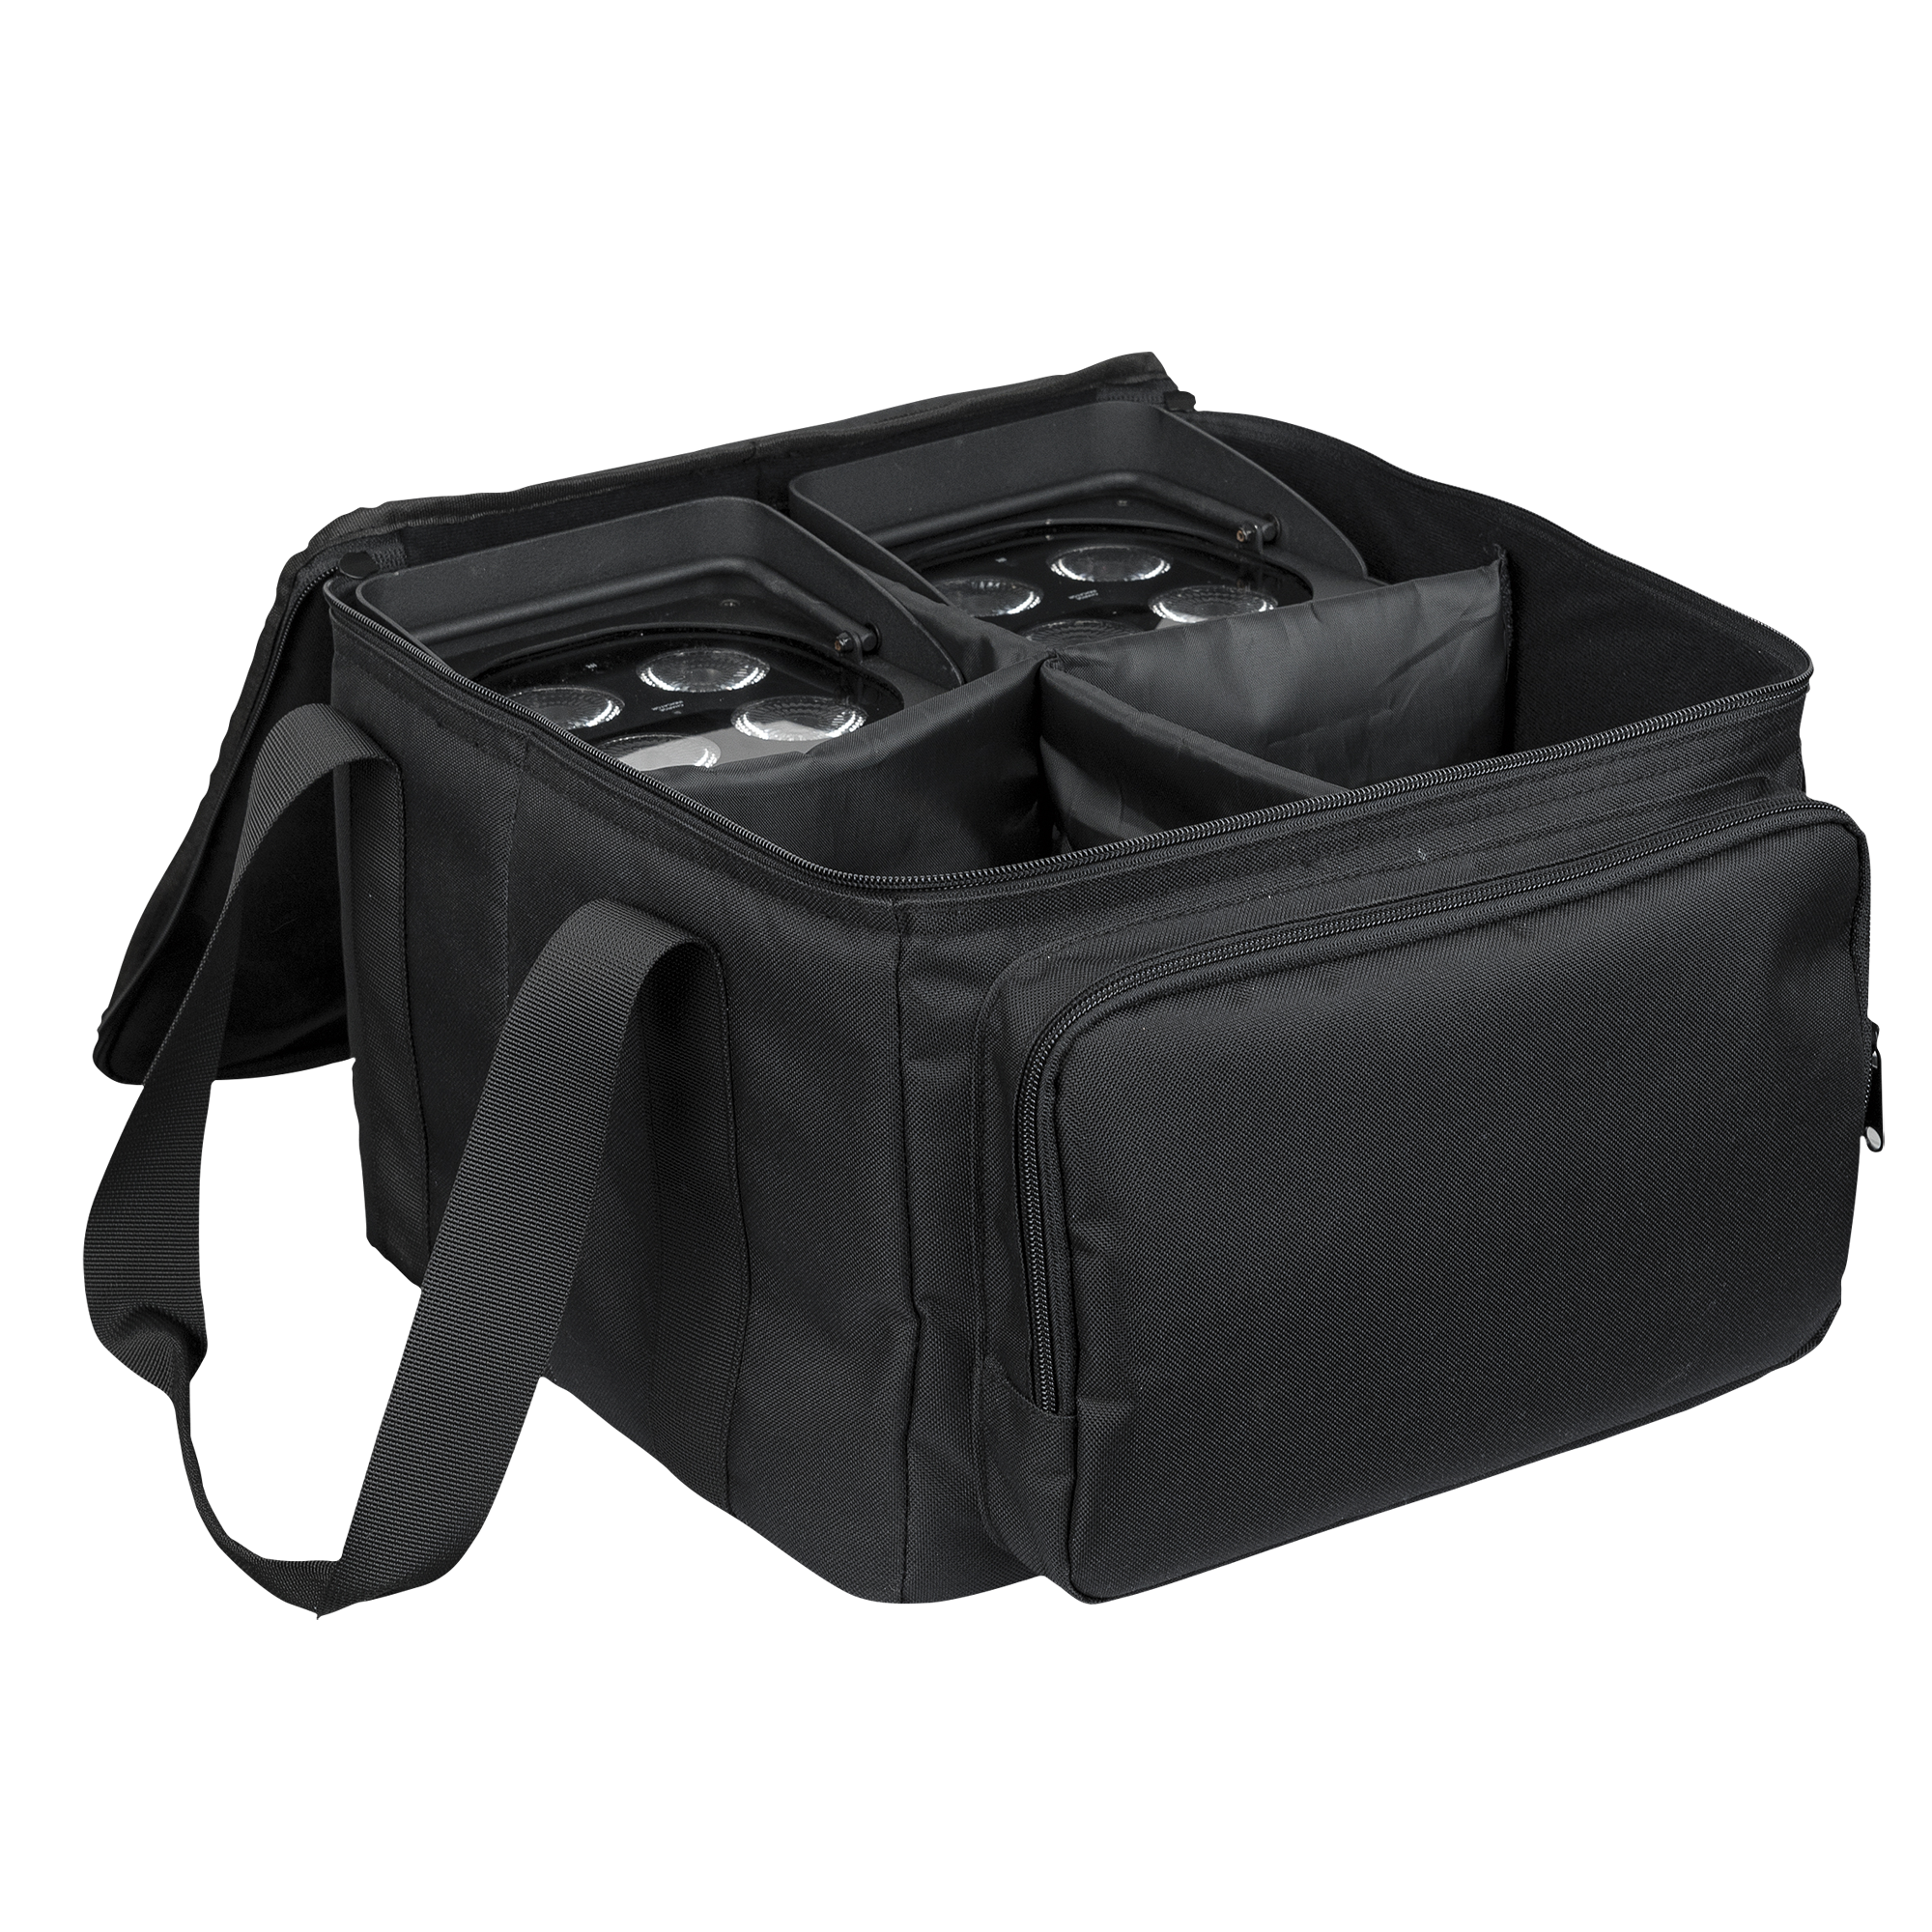 Showtec Carrying Bag for 4 x EventLITE 4/10 Mit herausnehmbaren Klettverschluss-Fächern